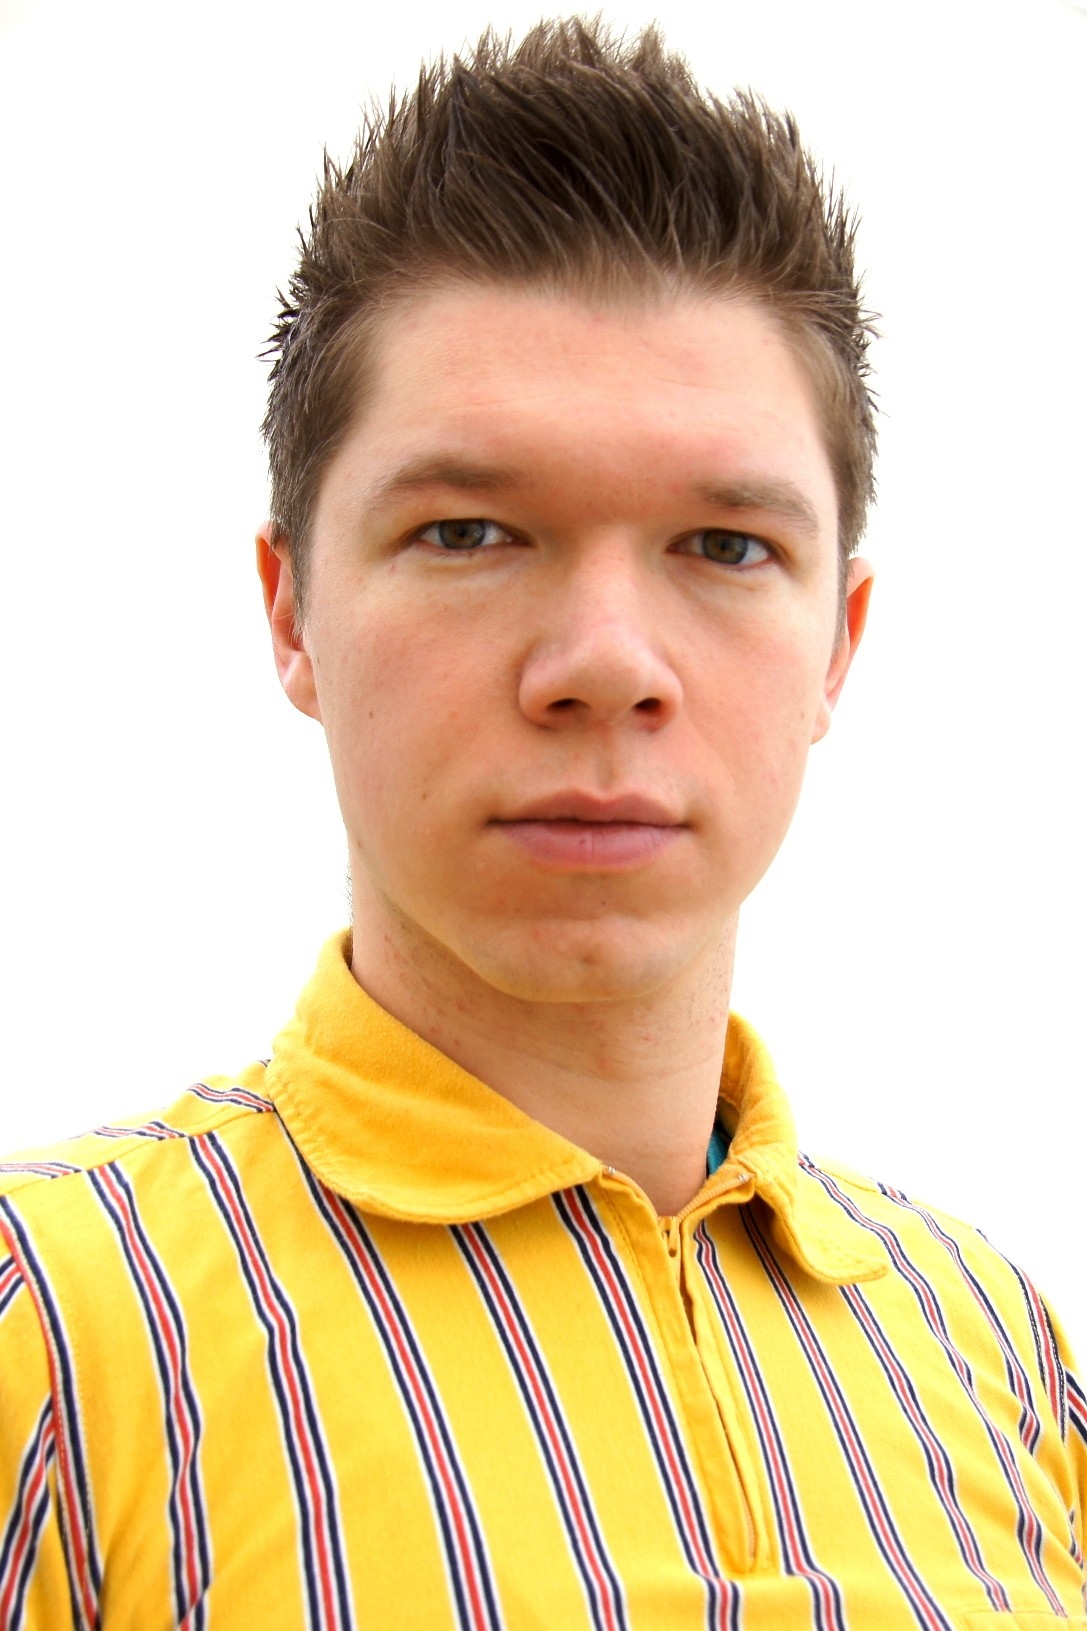 Фолькер Фойт - новый директор ИКЕА в Нижнем Новгороде. просмотров: 275